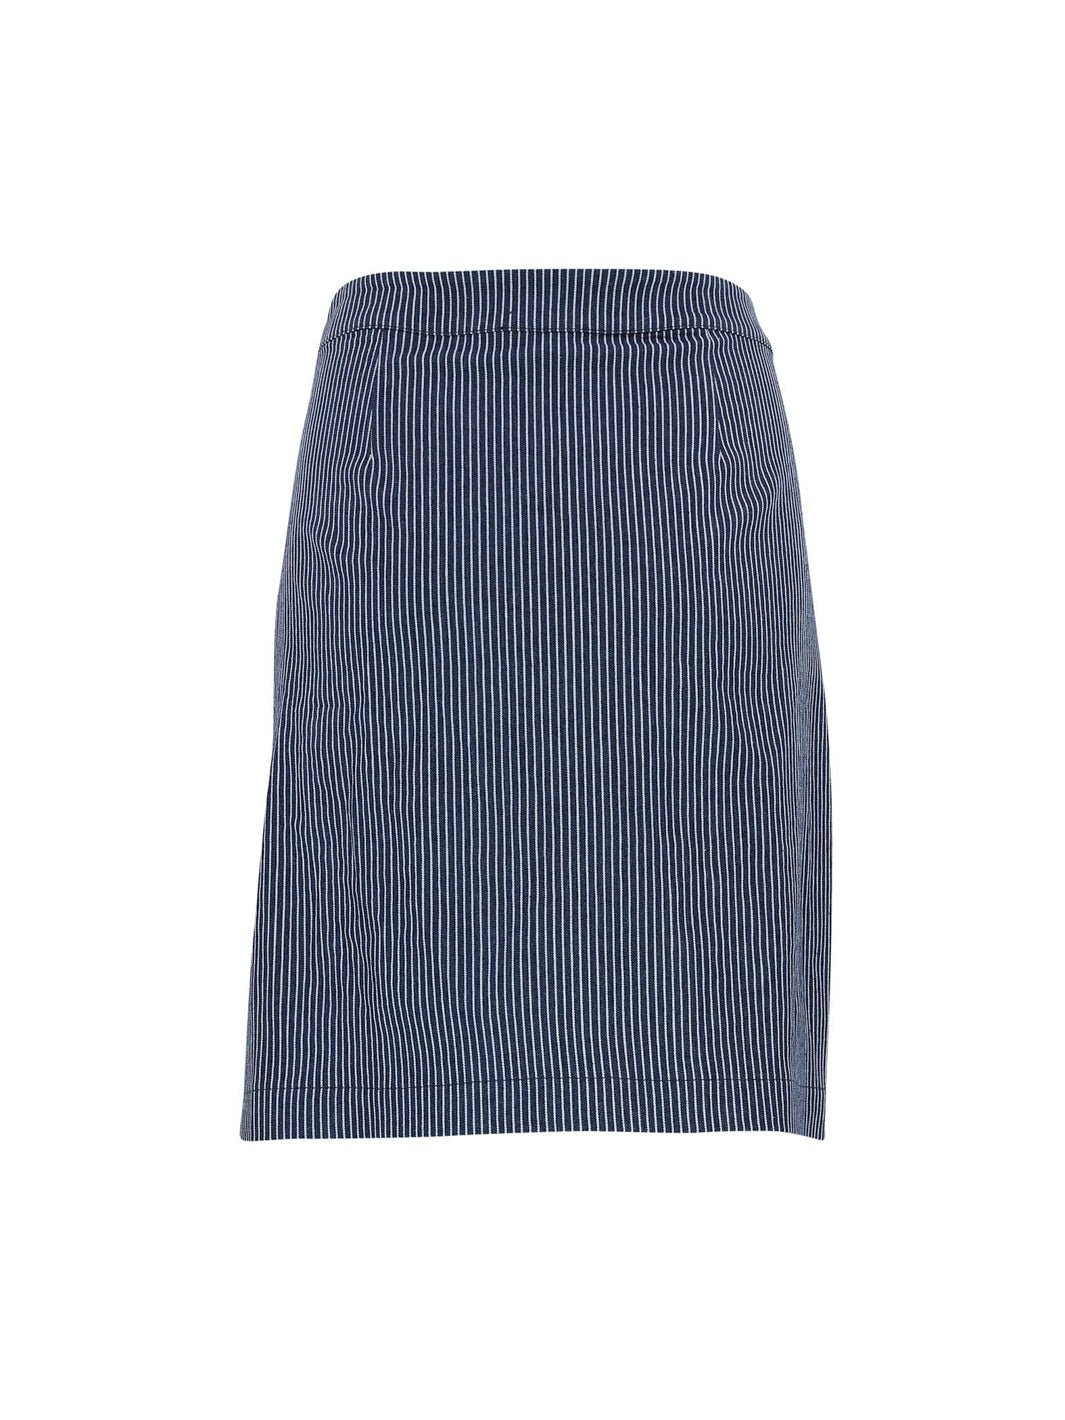 Continue Gabby skirt stripe blue - Online-Mode